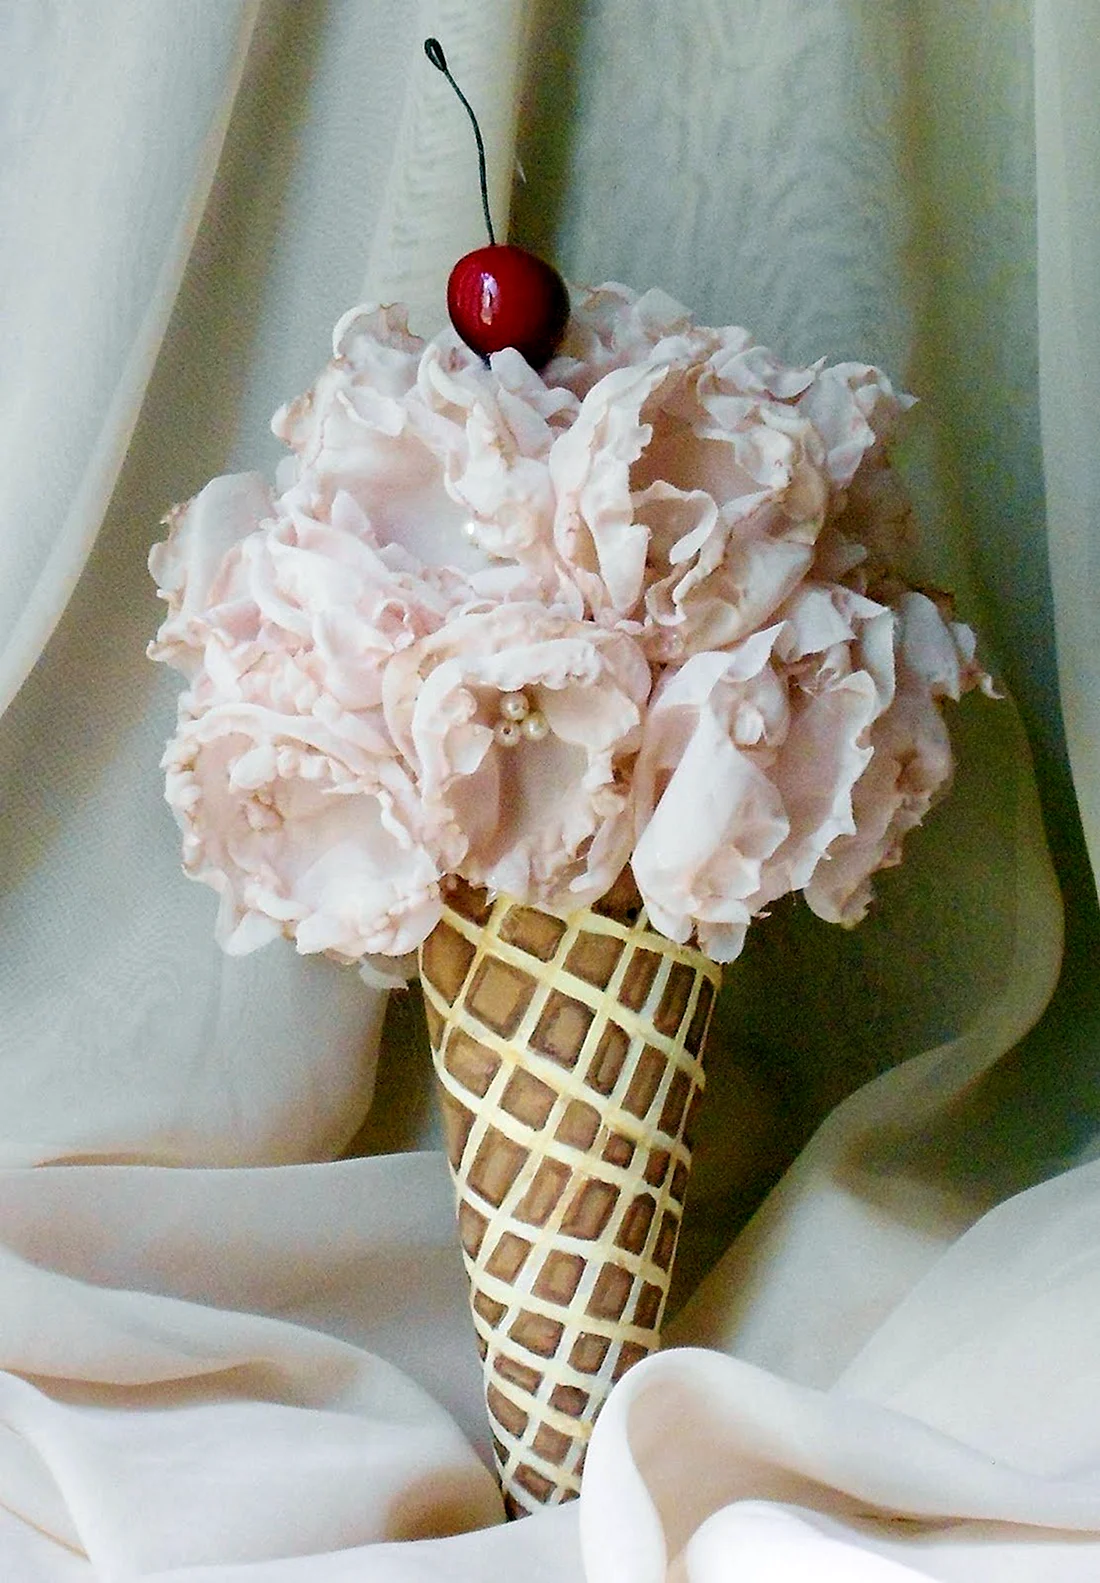 Мороженое с цветами